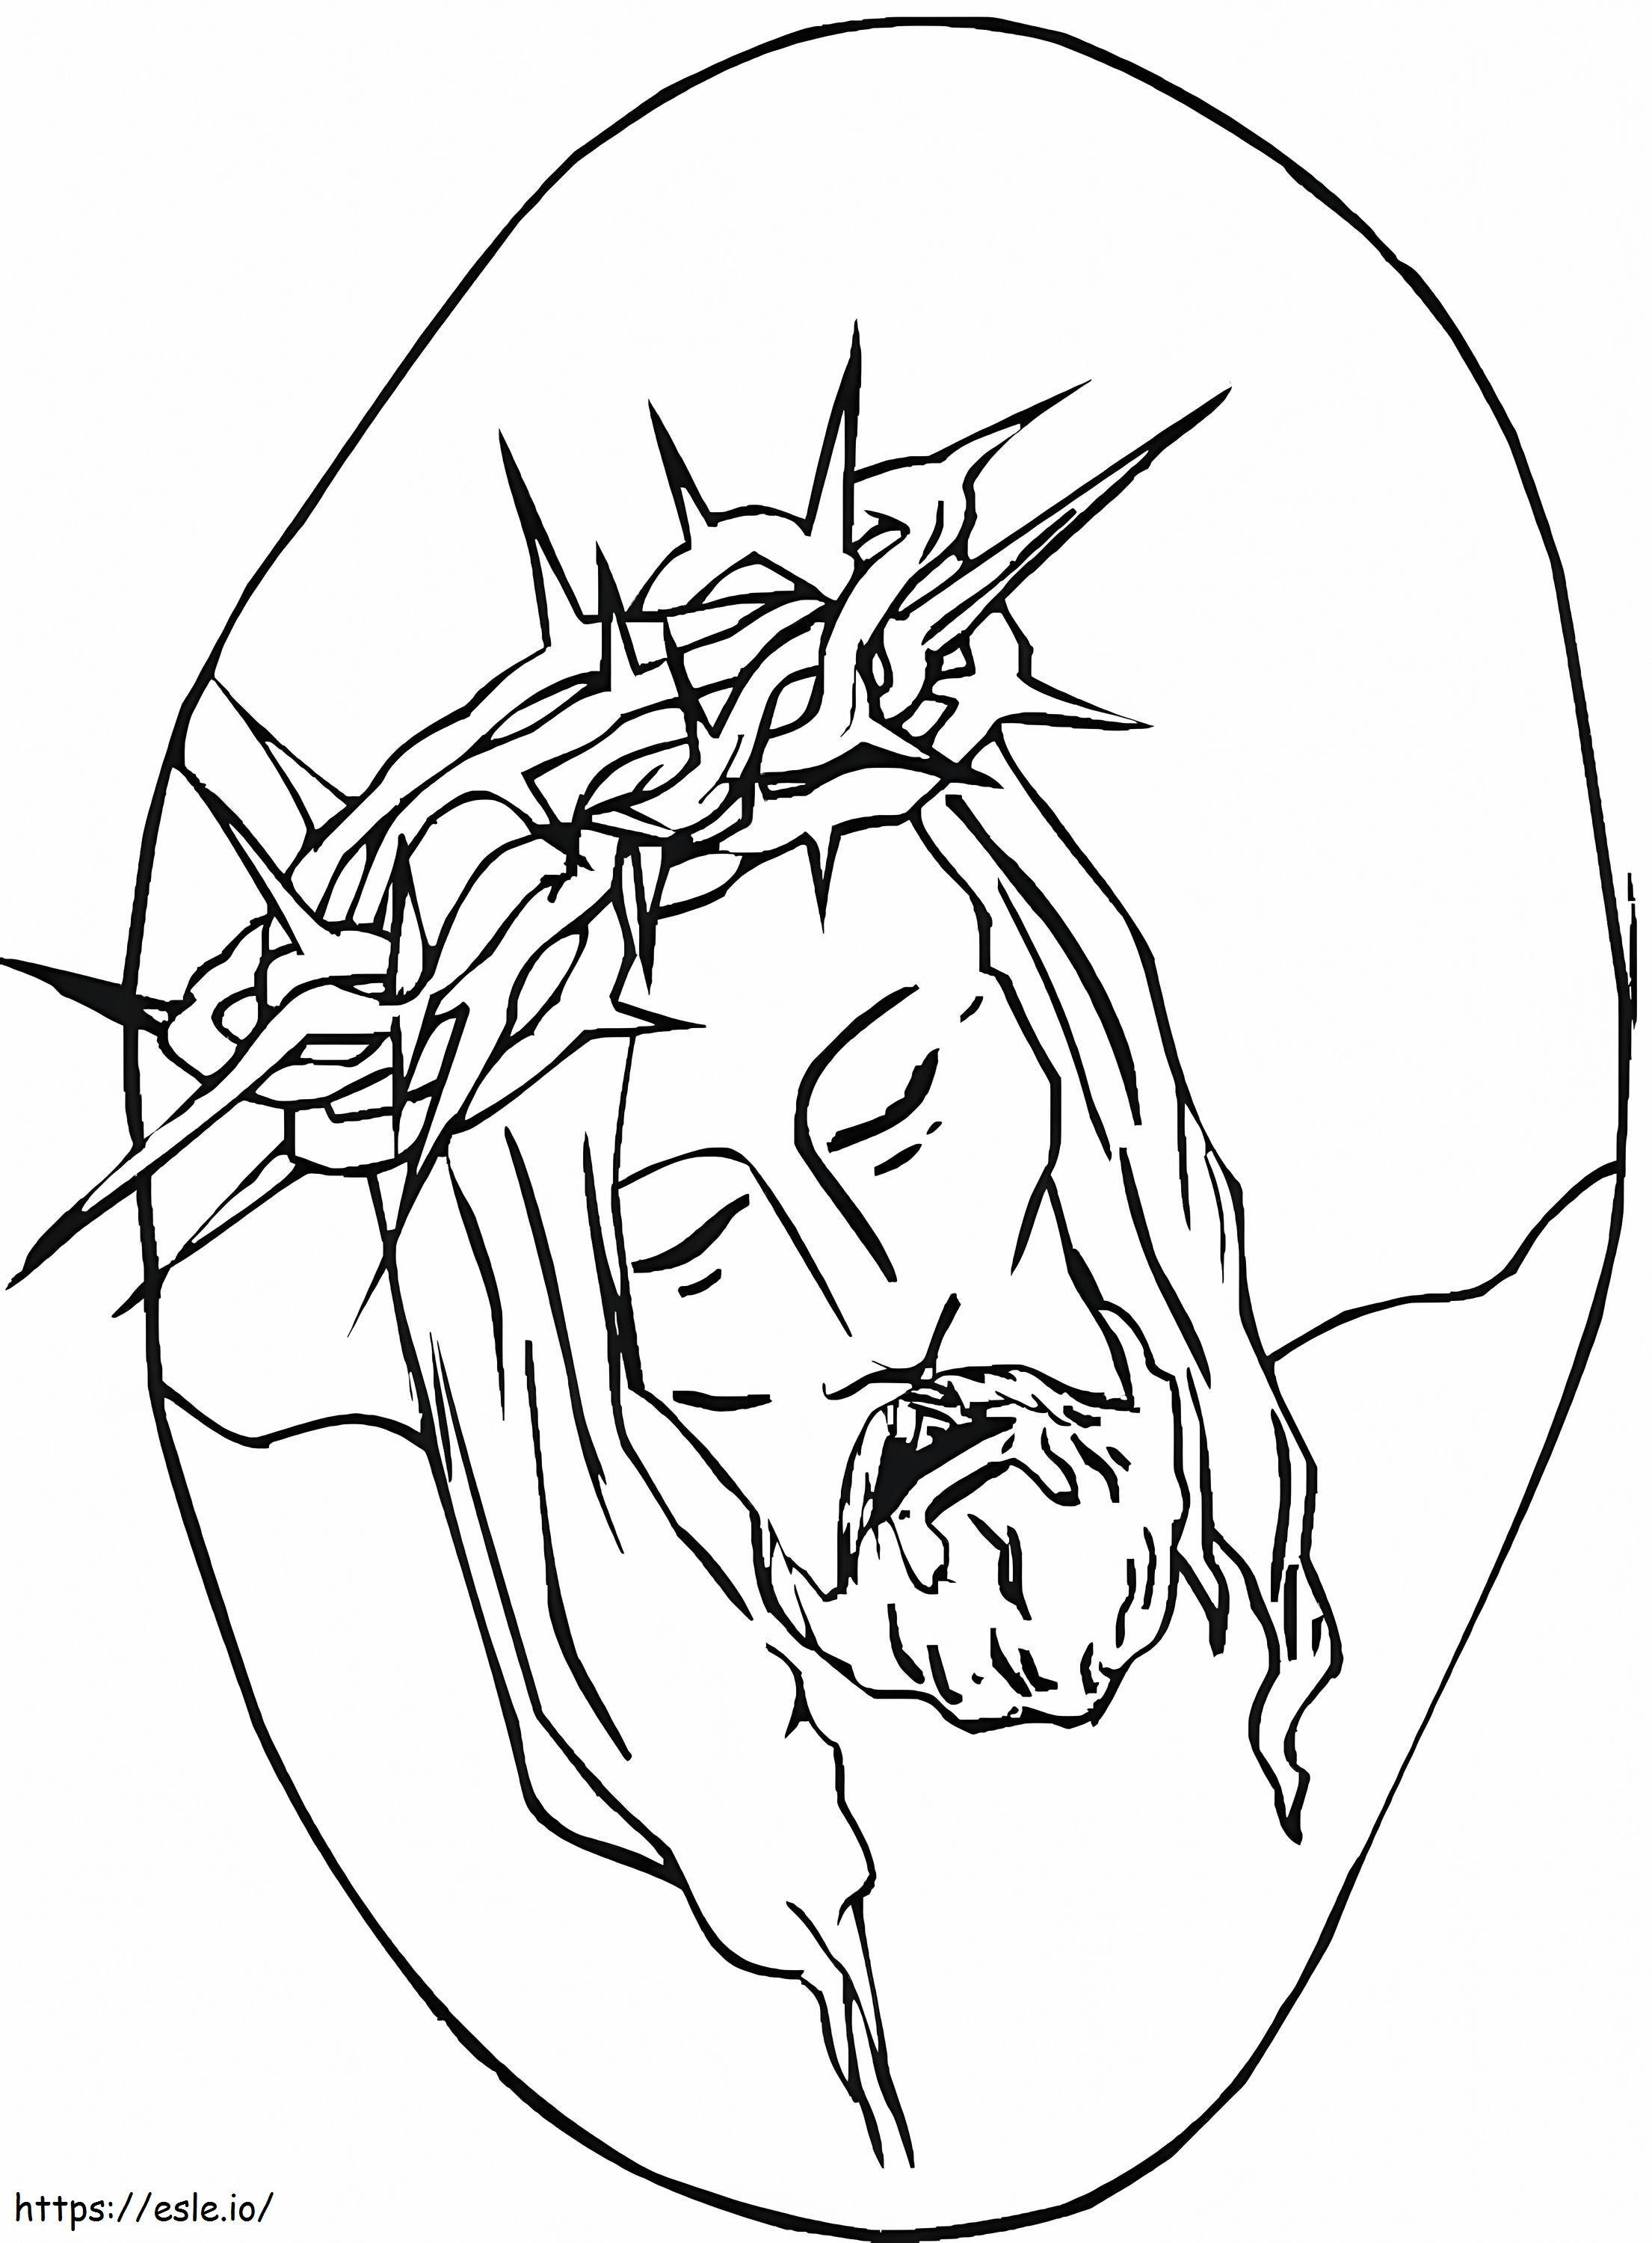 İsa'nın başı boyama